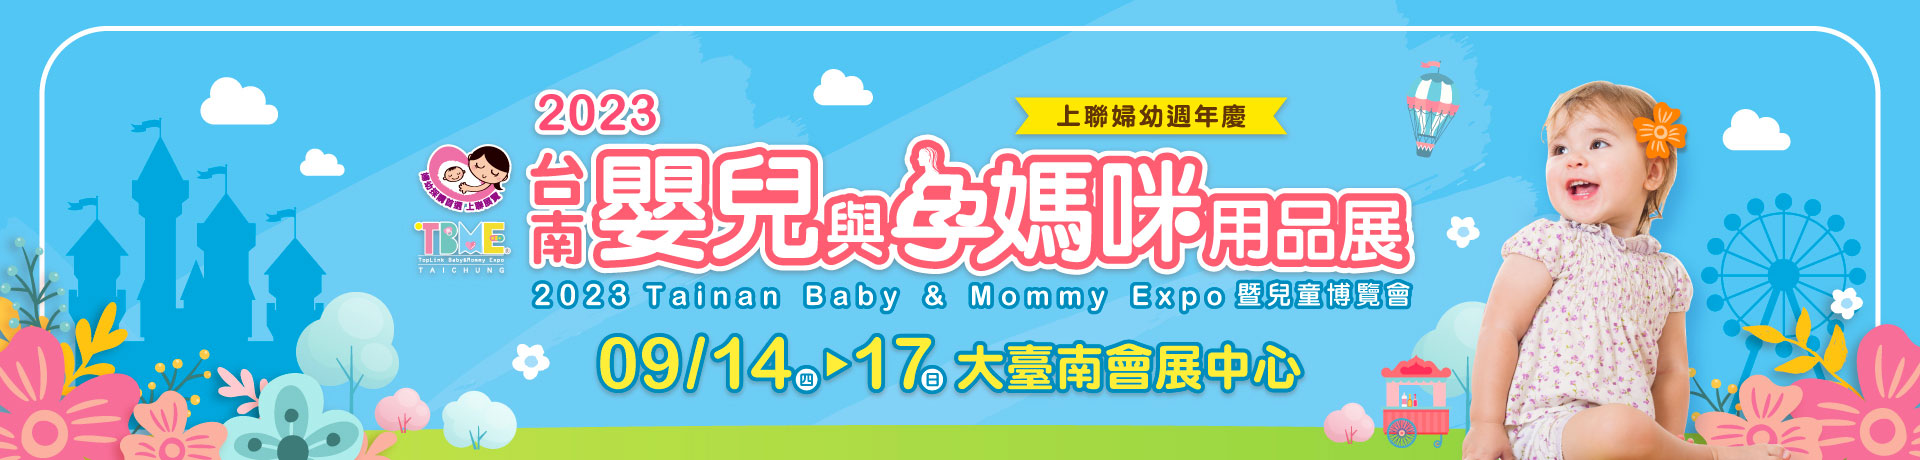 2023台南嬰兒與孕媽咪用品展暨兒童博覽會